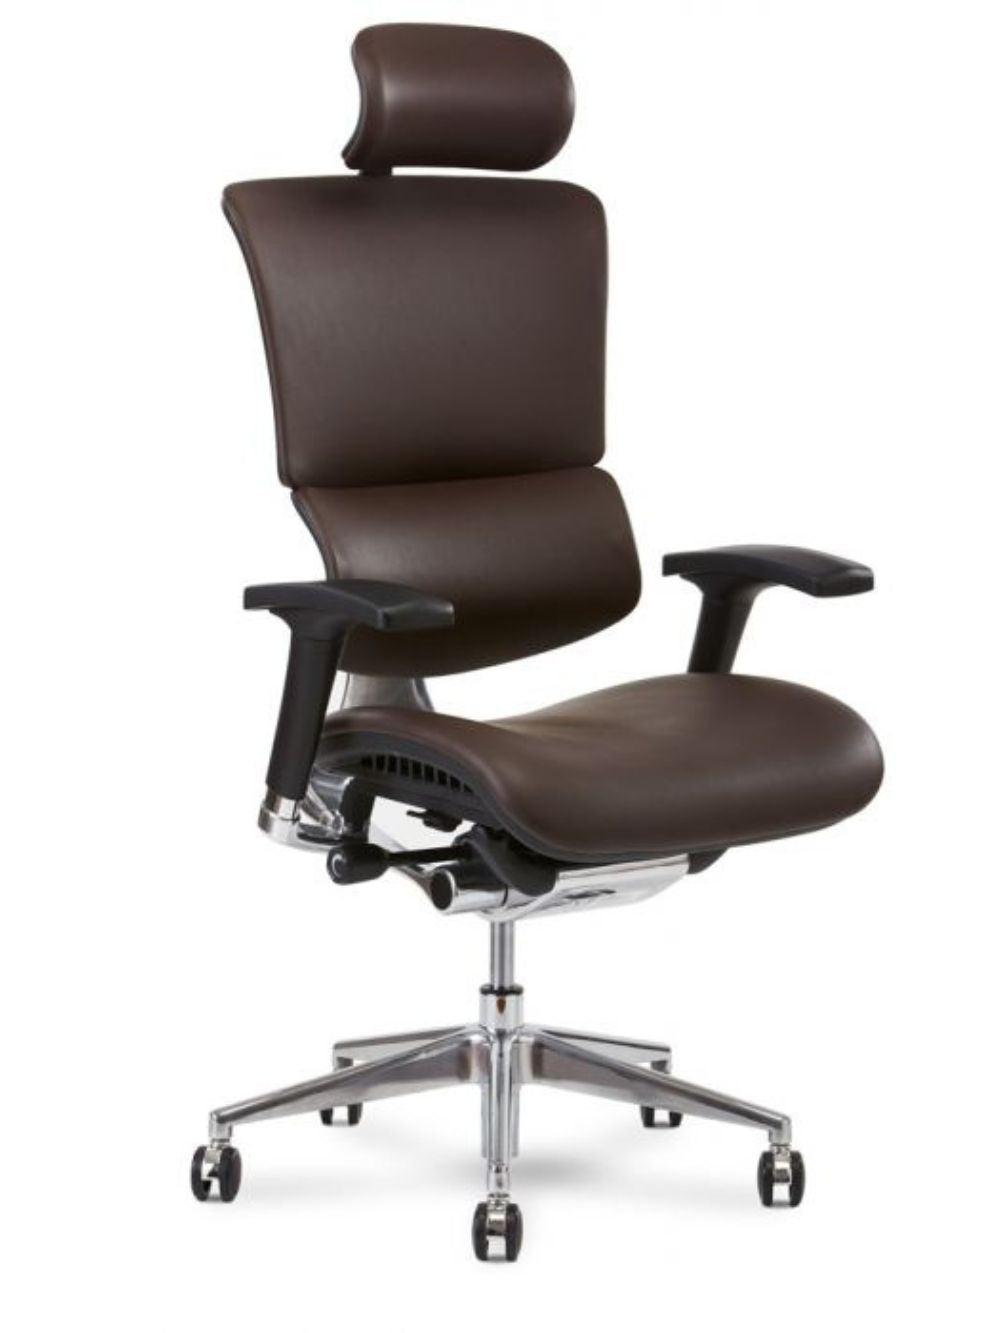 Rioli R50 豪華版 全真皮人體工學辦公椅